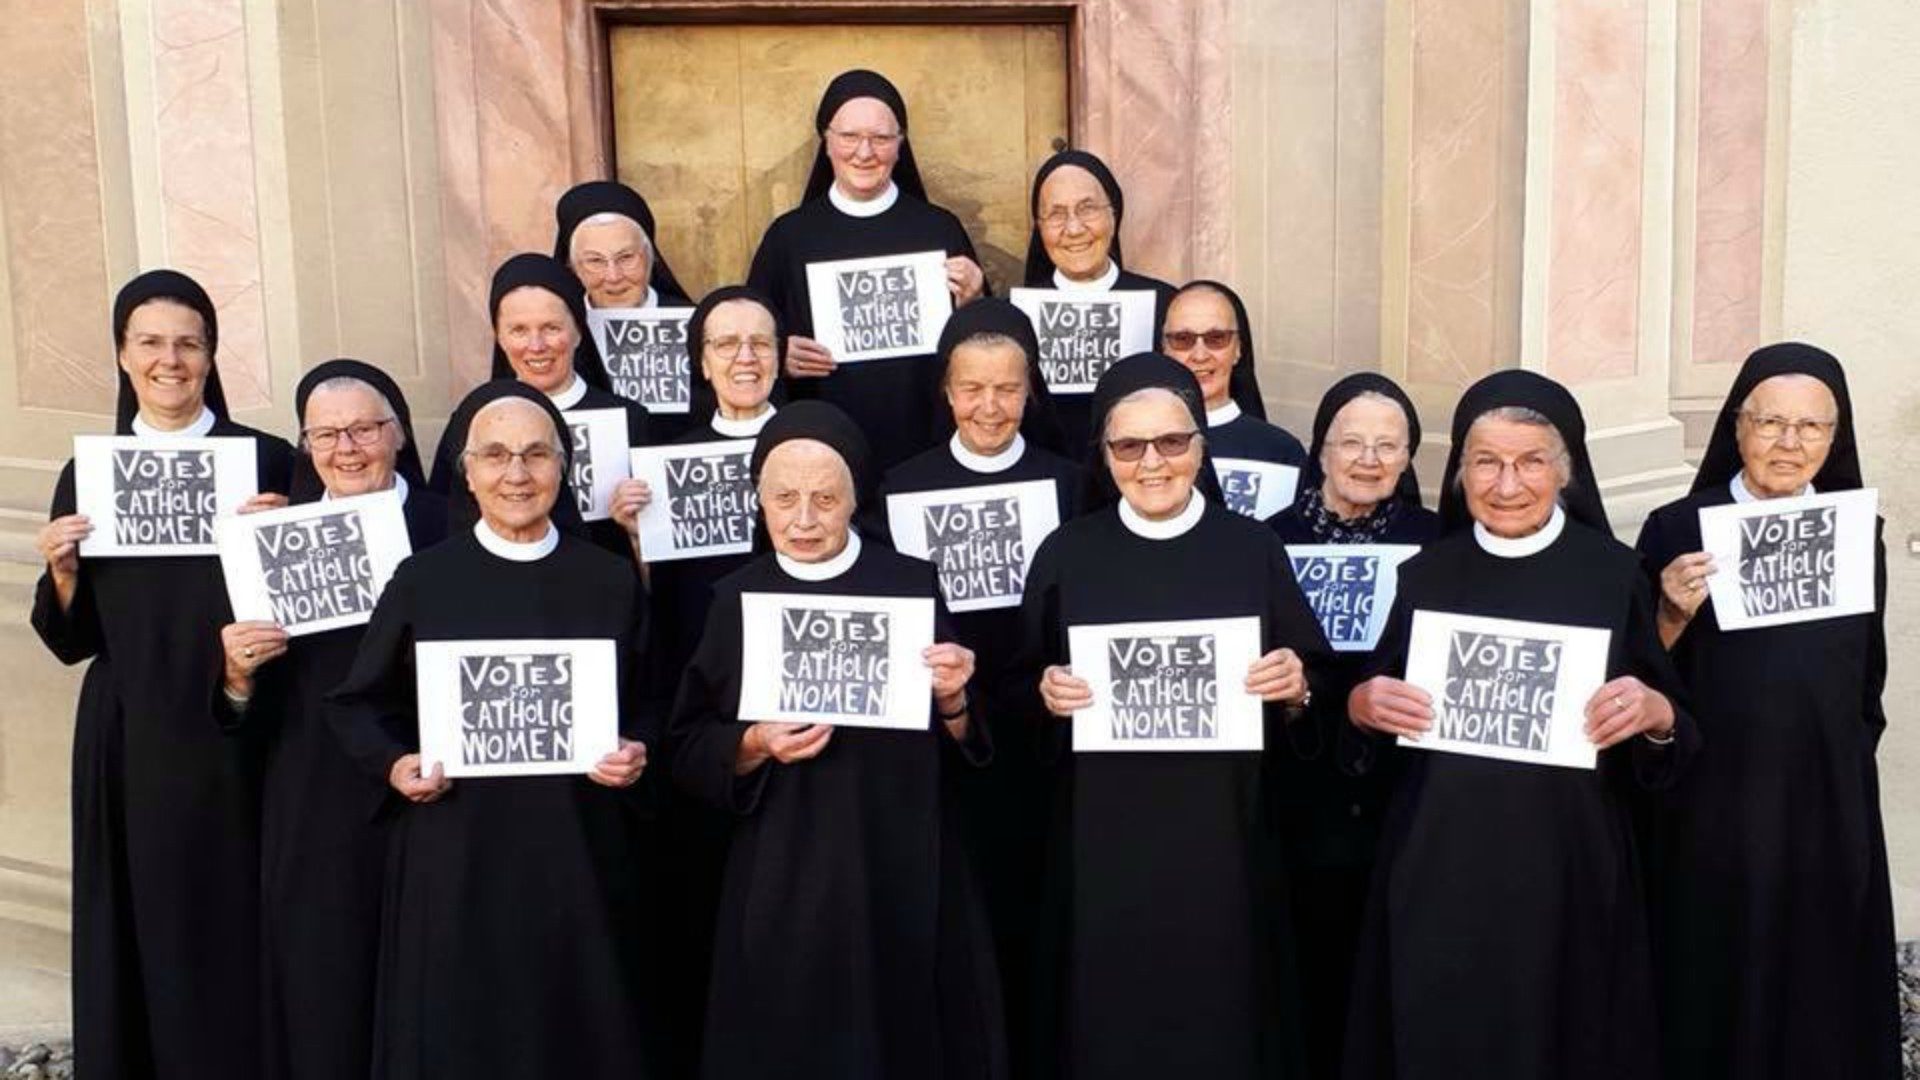 Le monache benedettine del monastero di Fahr, nella Diocesi di Basilea, guidate da madre Irene Gassmann,
hanno recentemente manifestato per il diritto di voto delle donne al Sinodo.